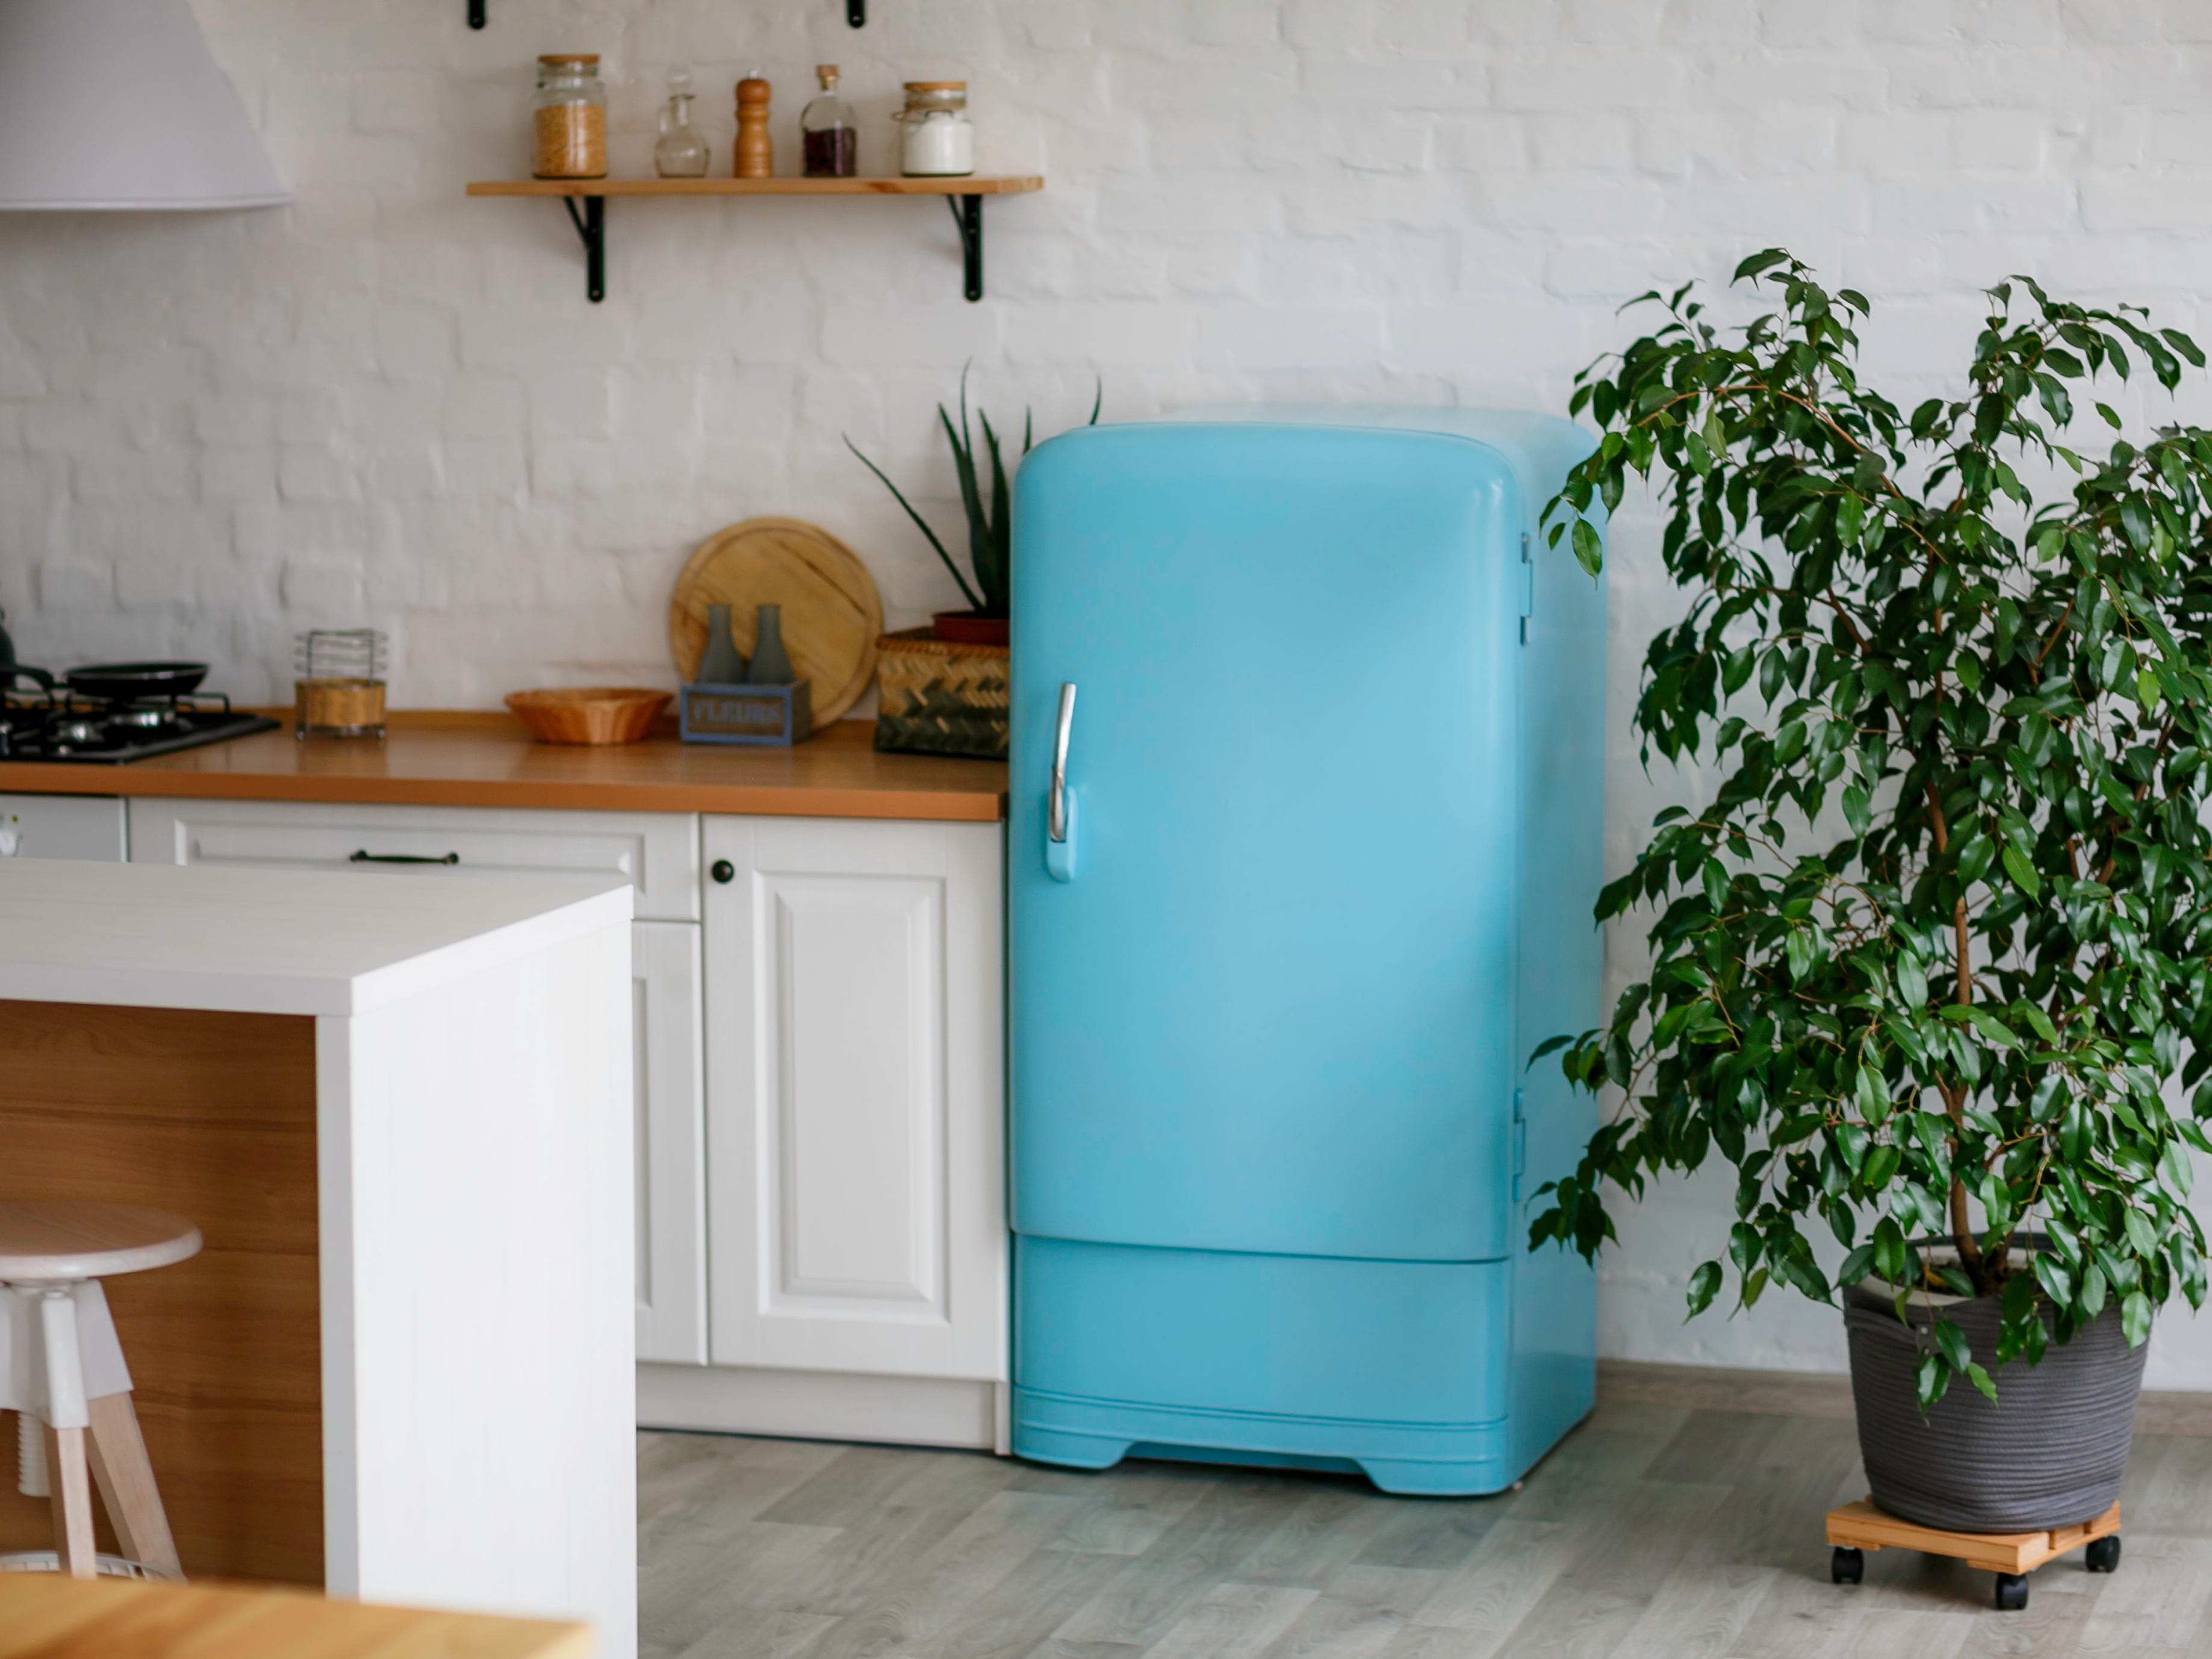 Küche mit Pflanzen, weißen Schränken und kleinem blauen Kühlschrank